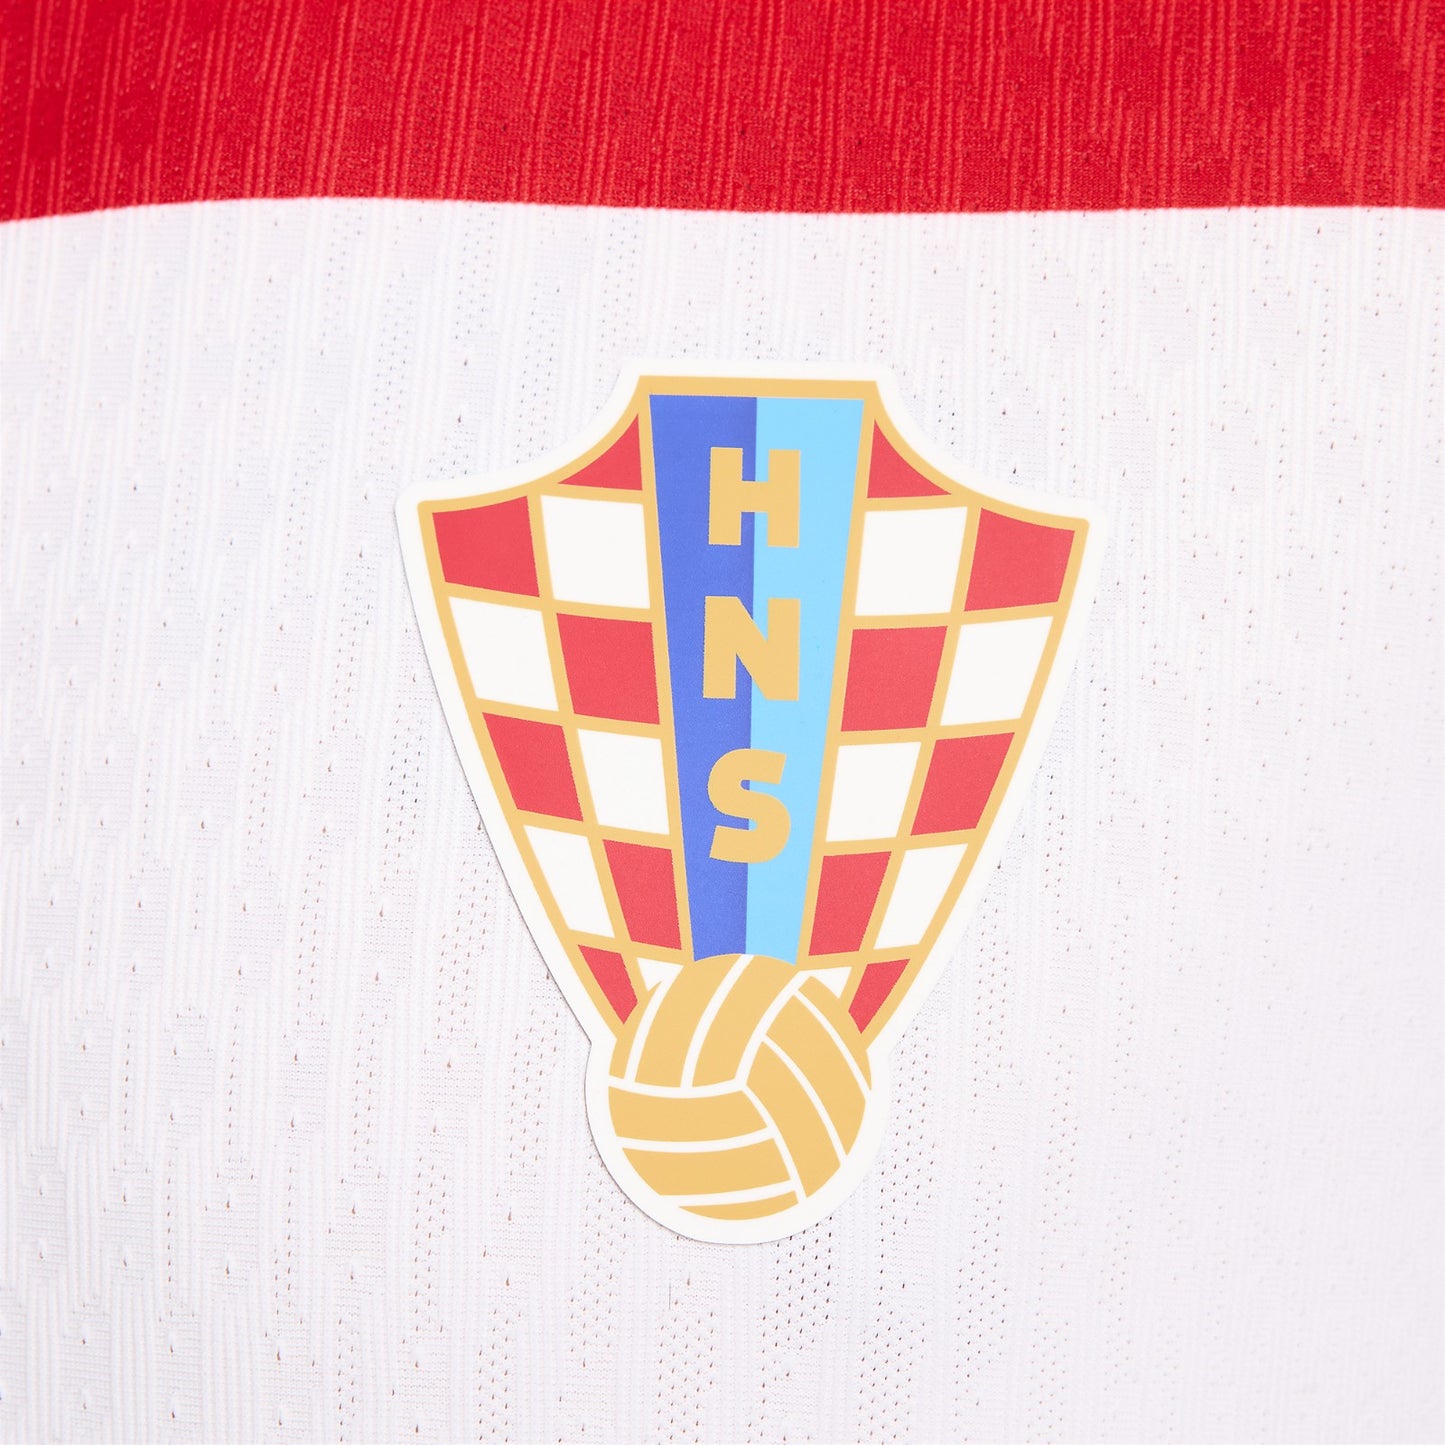 Croatia 24-25 Home Shirt